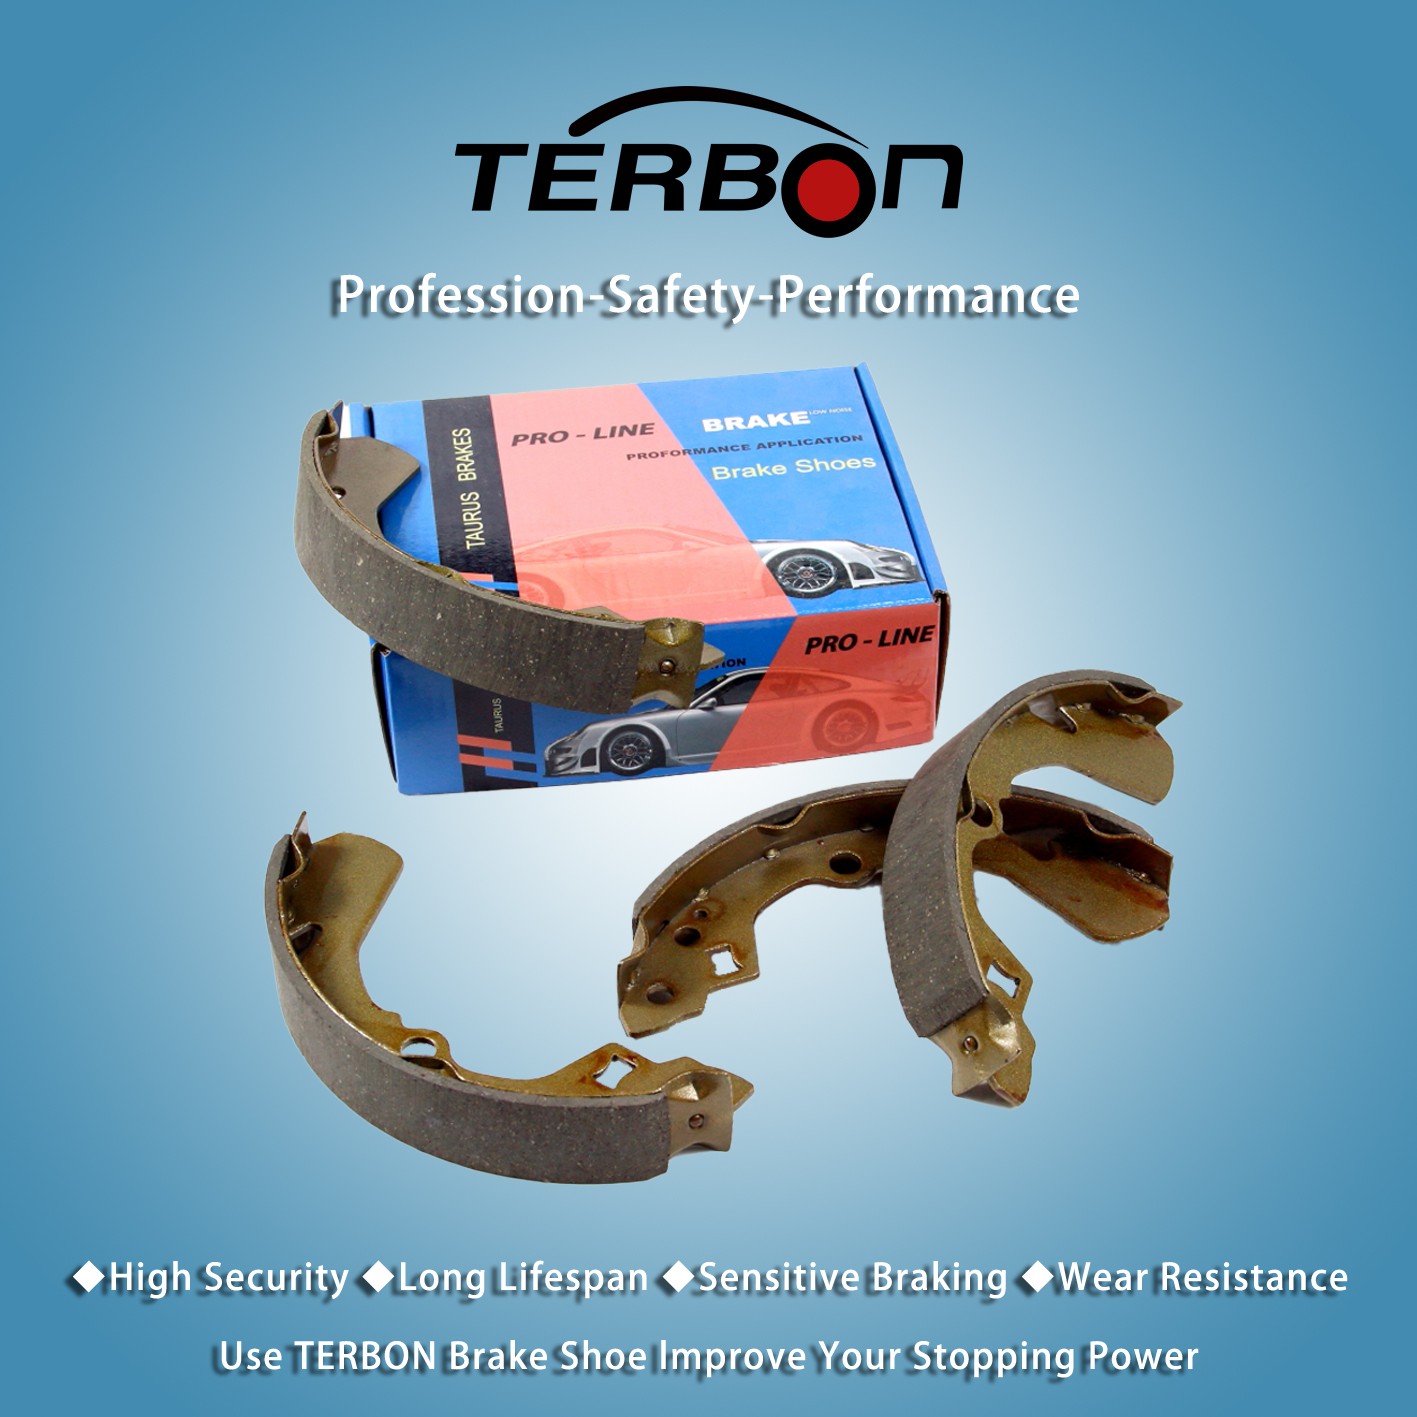 Terbon、車両のブレーキ性能を向上させる新しい高性能フロントアクスルブレーキシューを発売